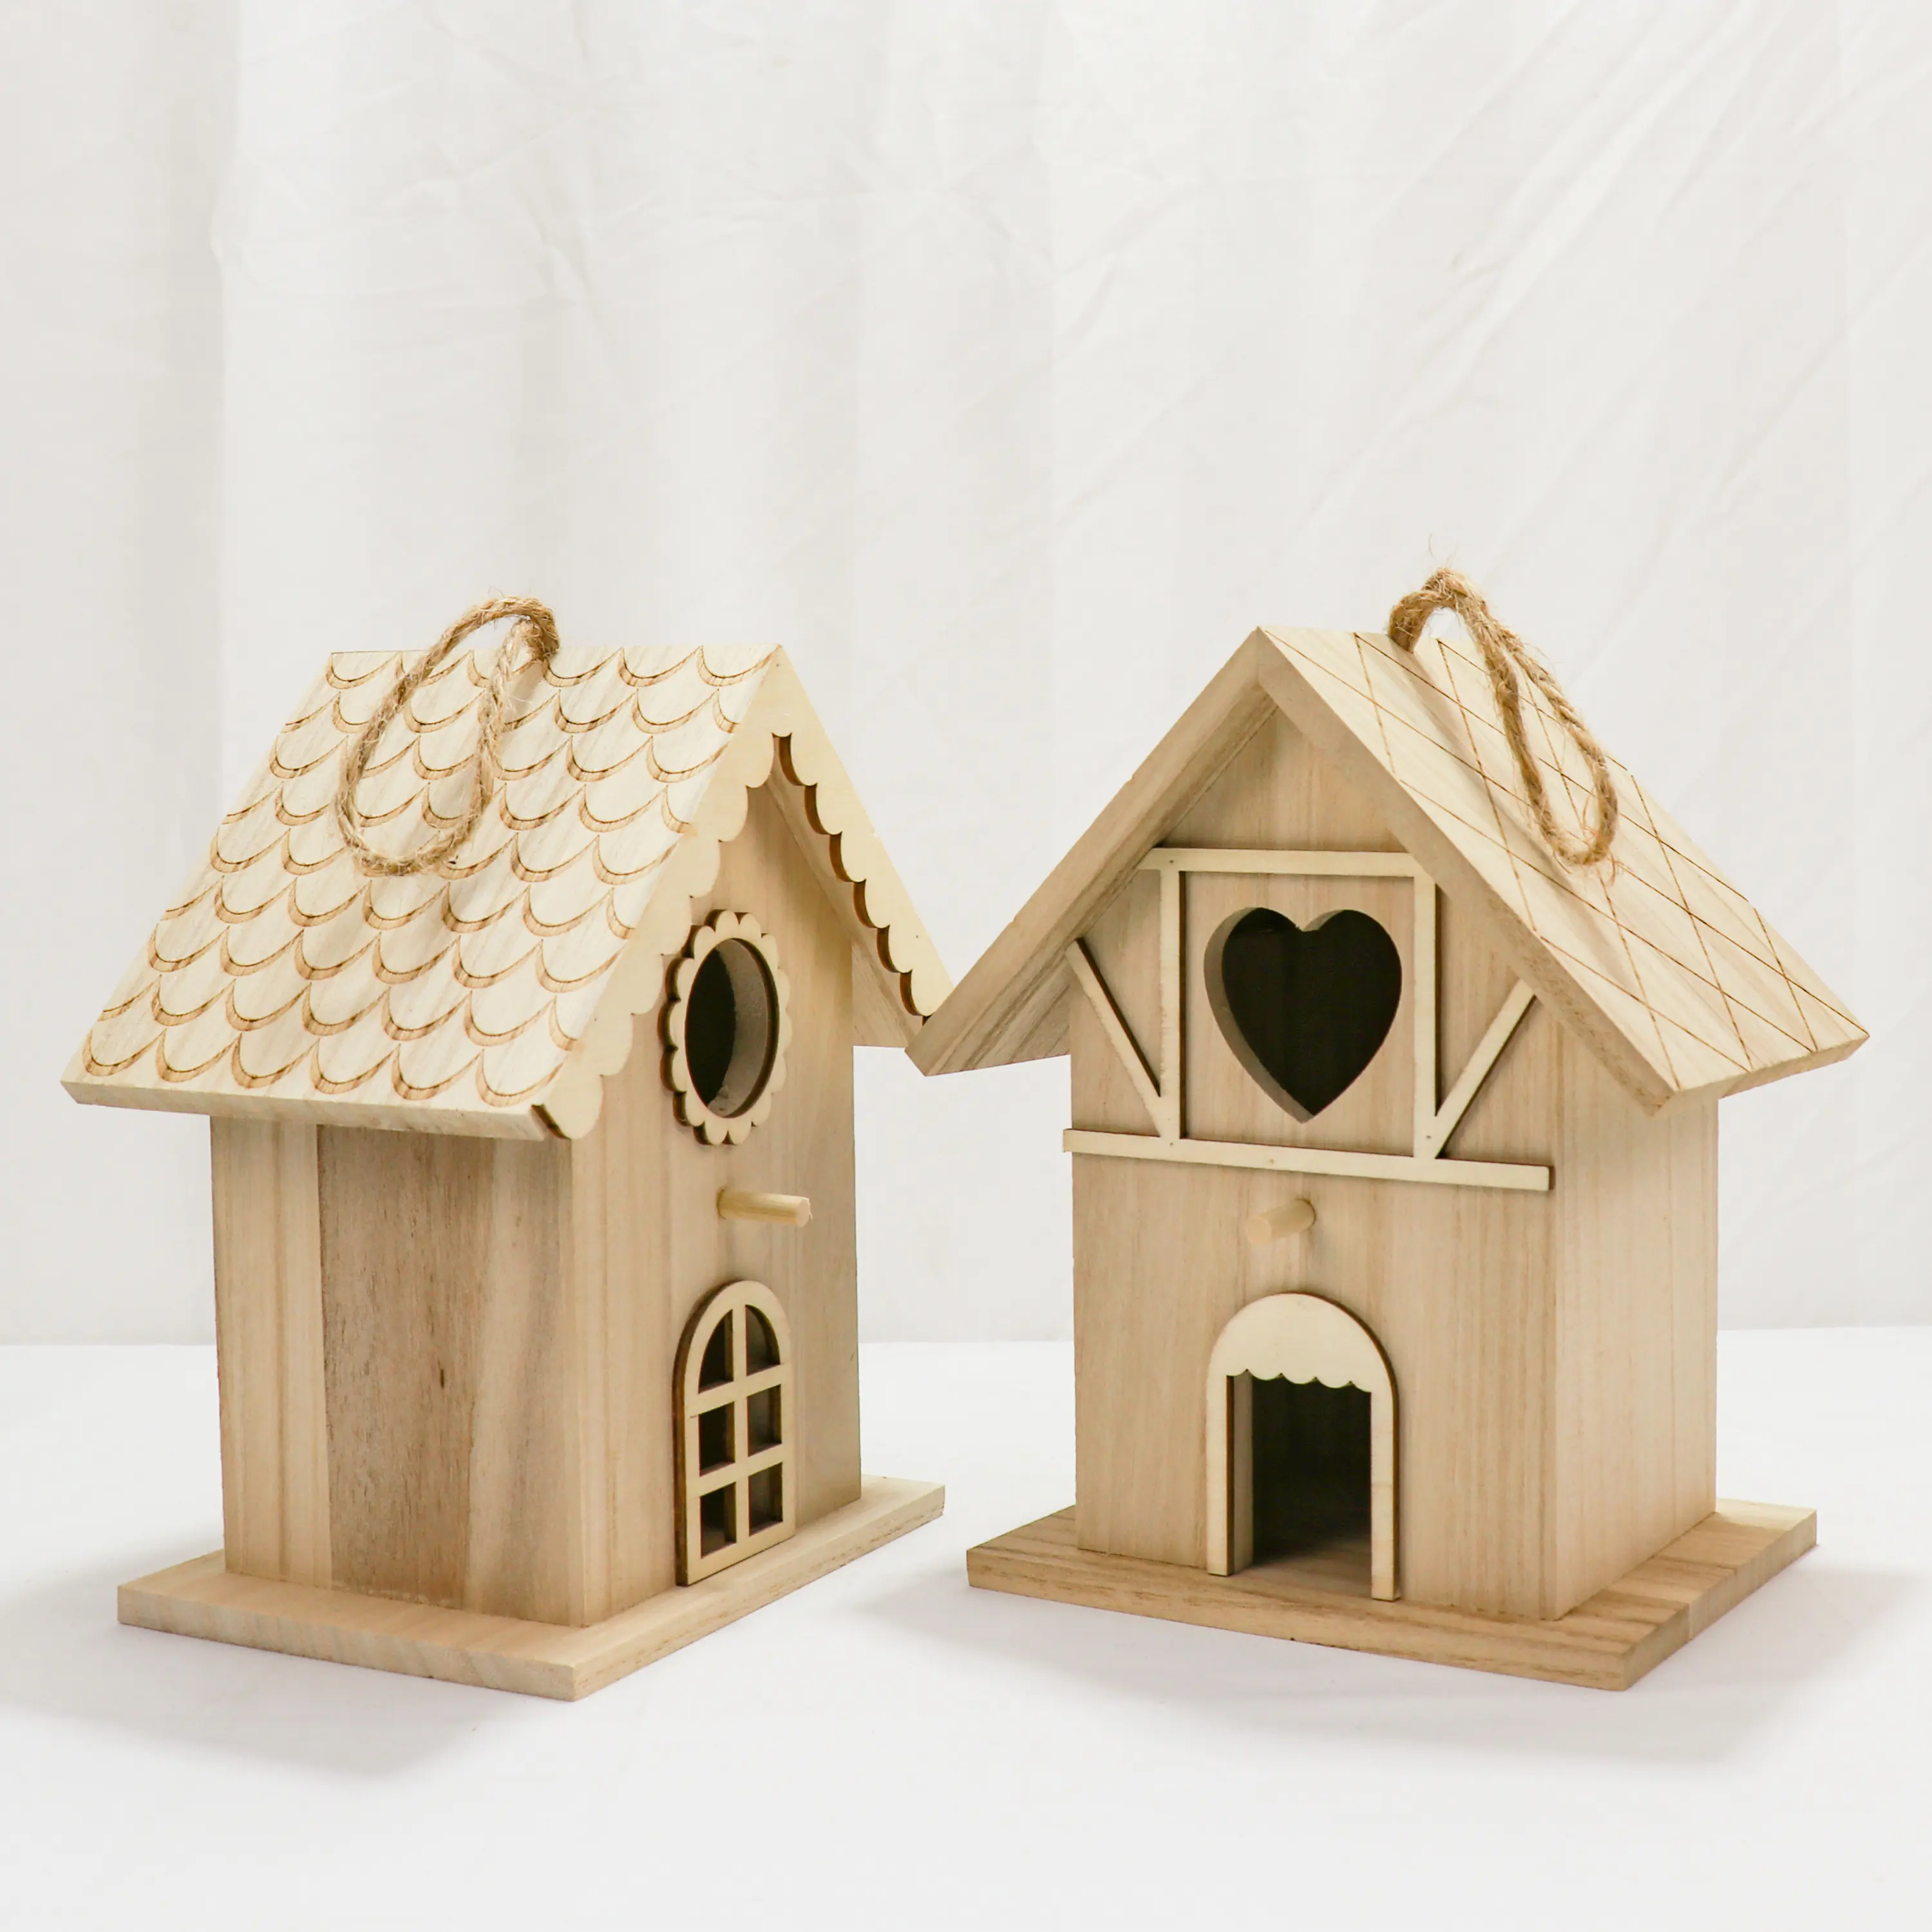 مصغرة خشبية Birdhouse أطقم منازل الطيور ليرسم ويزين للأطفال الفنون والحرف أو مشاريع الحدائق